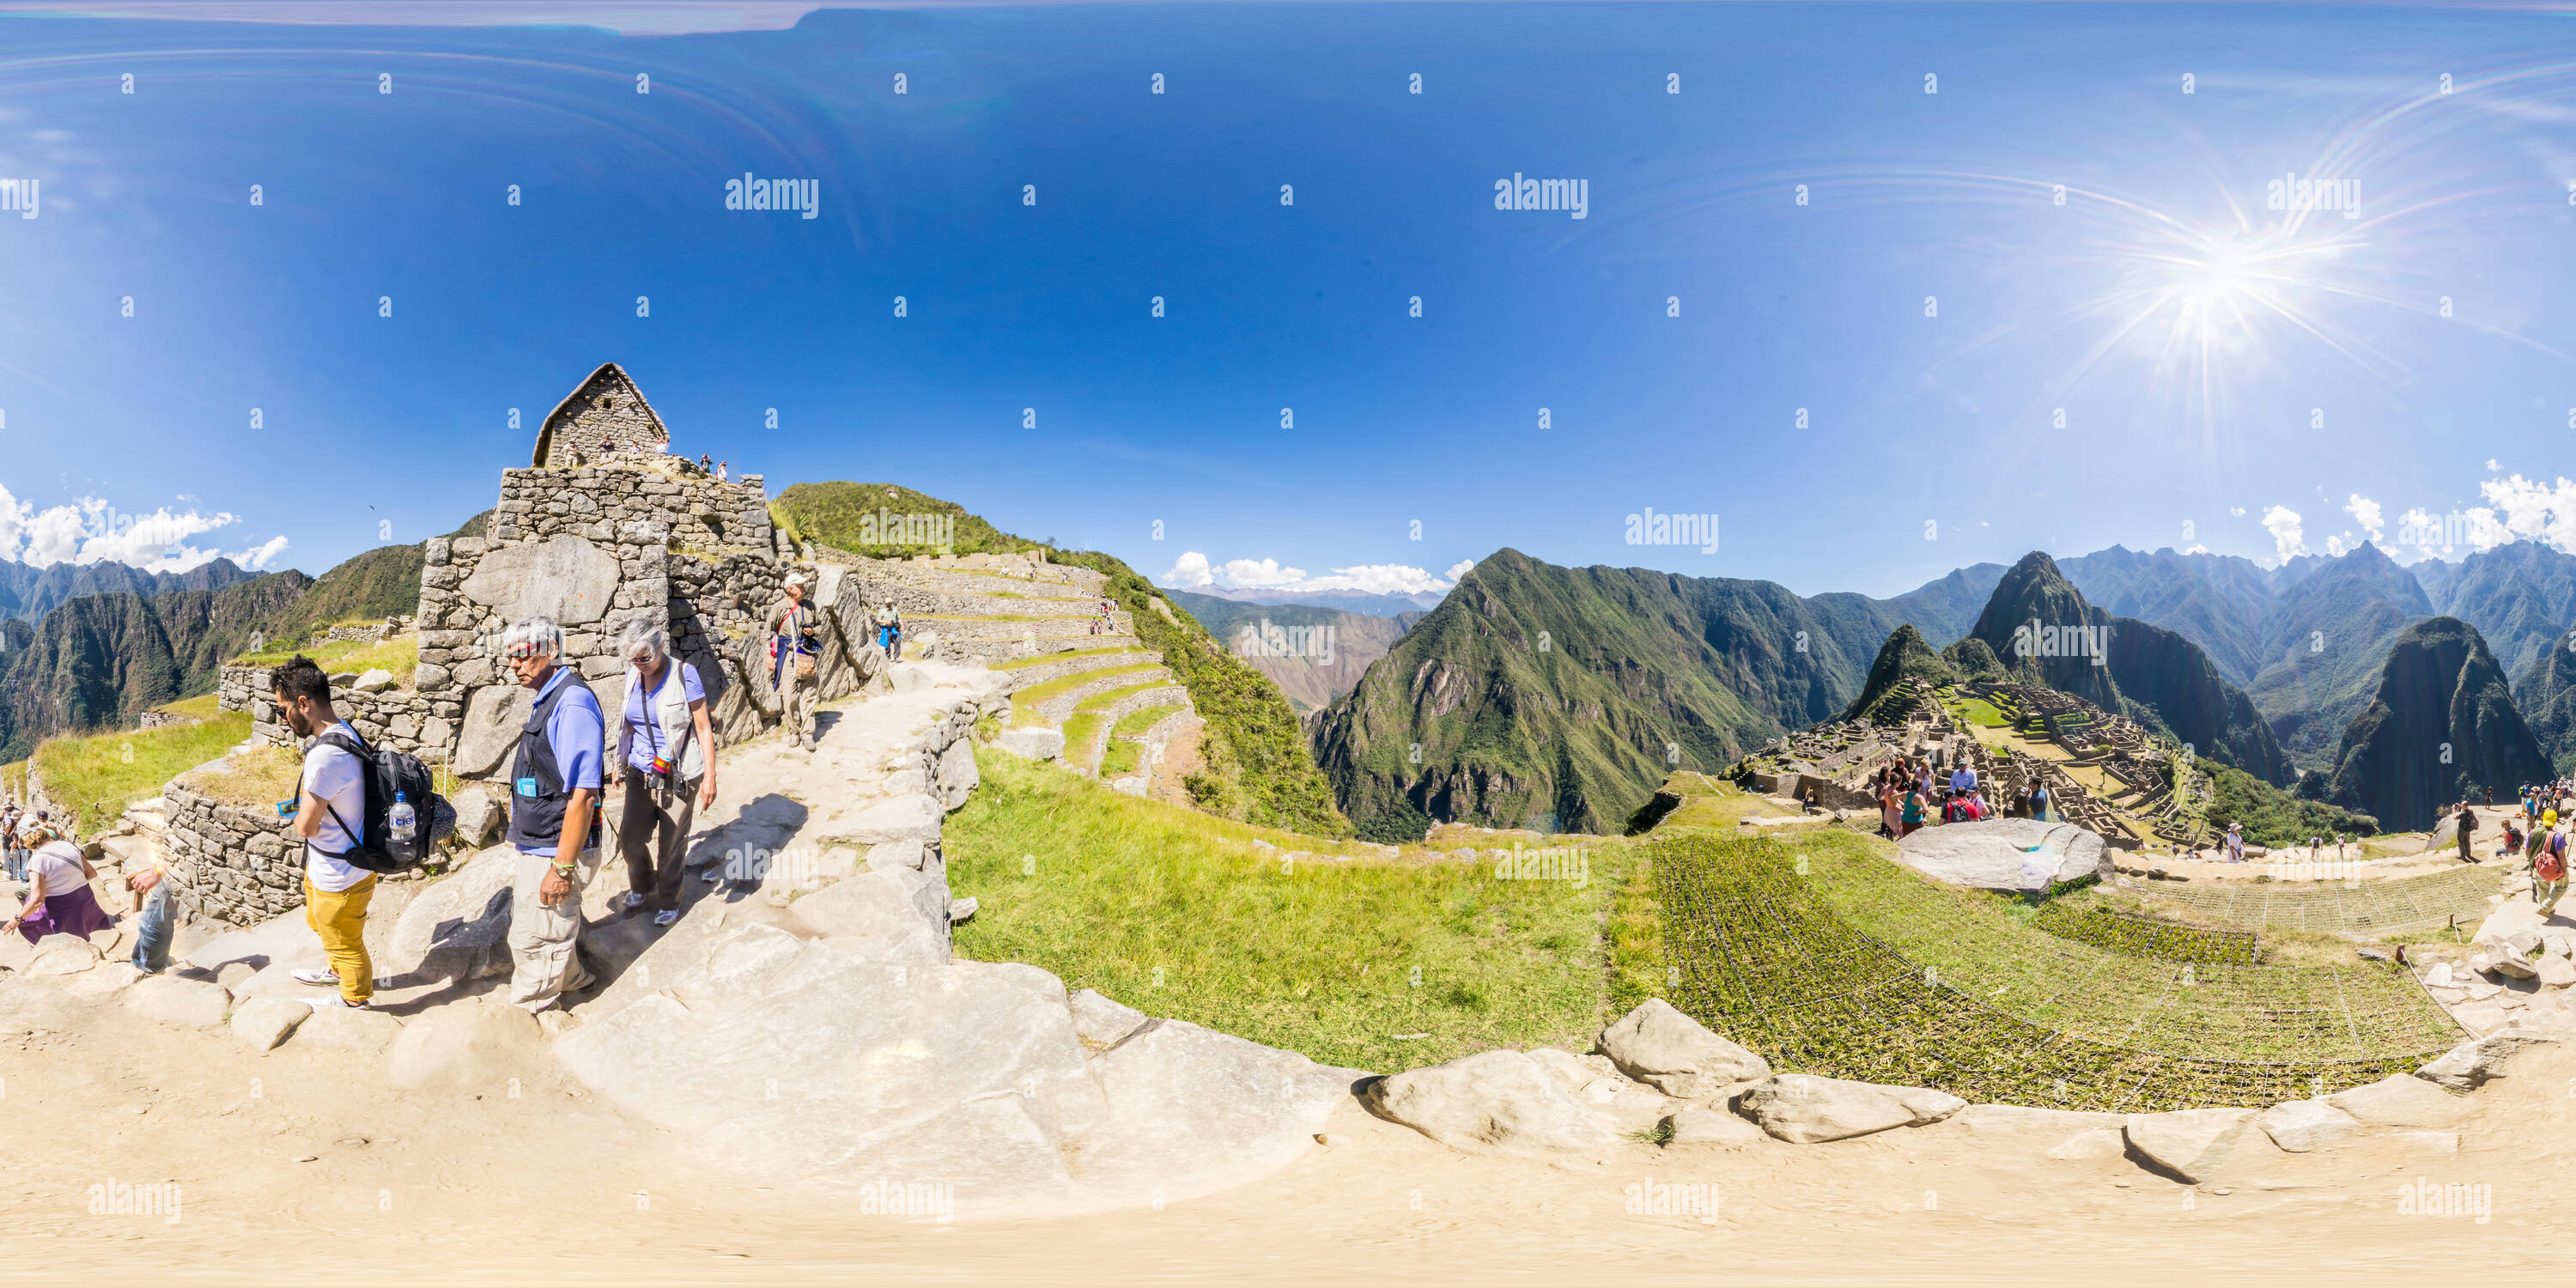 360 Grad Panorama Ansicht von Unterhalb der Pförtnerloge, Machu Picchu, Peru